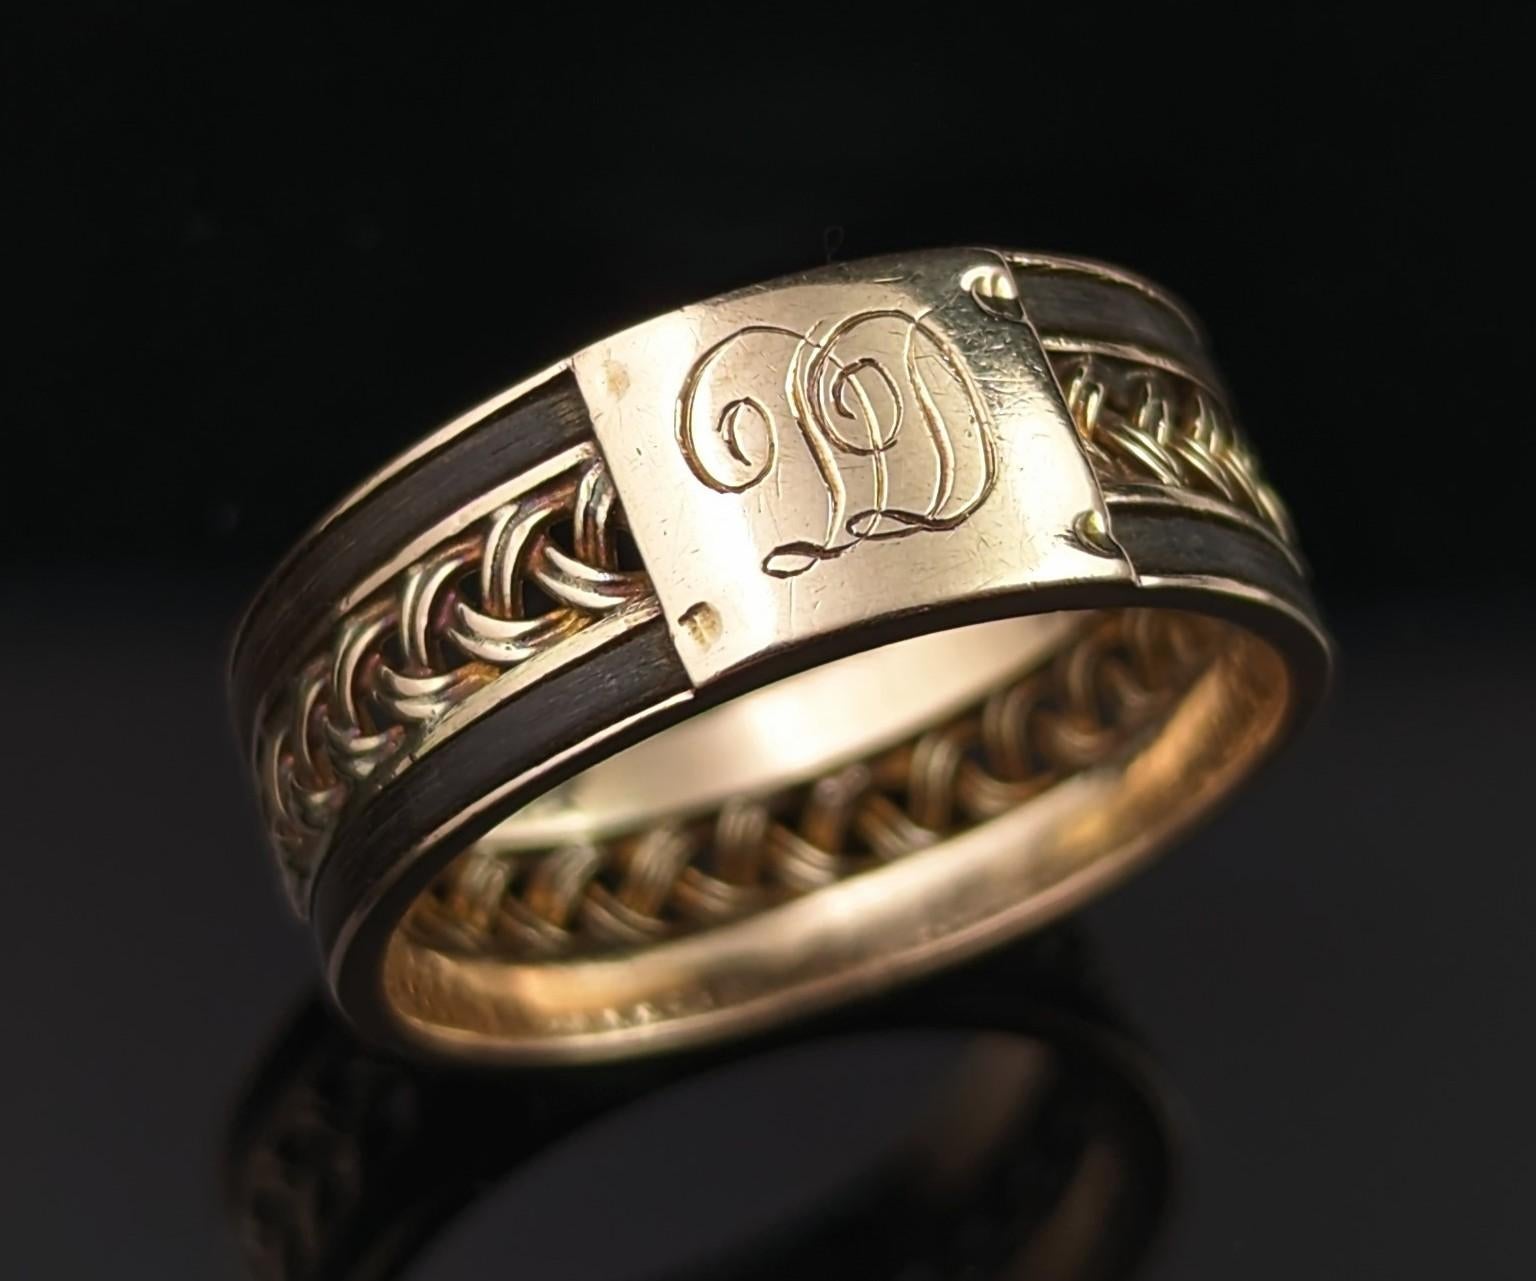 Dieser antike Raj-Ära geflochtene 14kt Goldbandring ist wirklich atemberaubend schön!

Obwohl sie die dunkle Ästhetik eines Trauerstücks hat, wurden diese viktorianischen Schönheiten oft von Reisen mitgebracht und als Liebesgeschenke